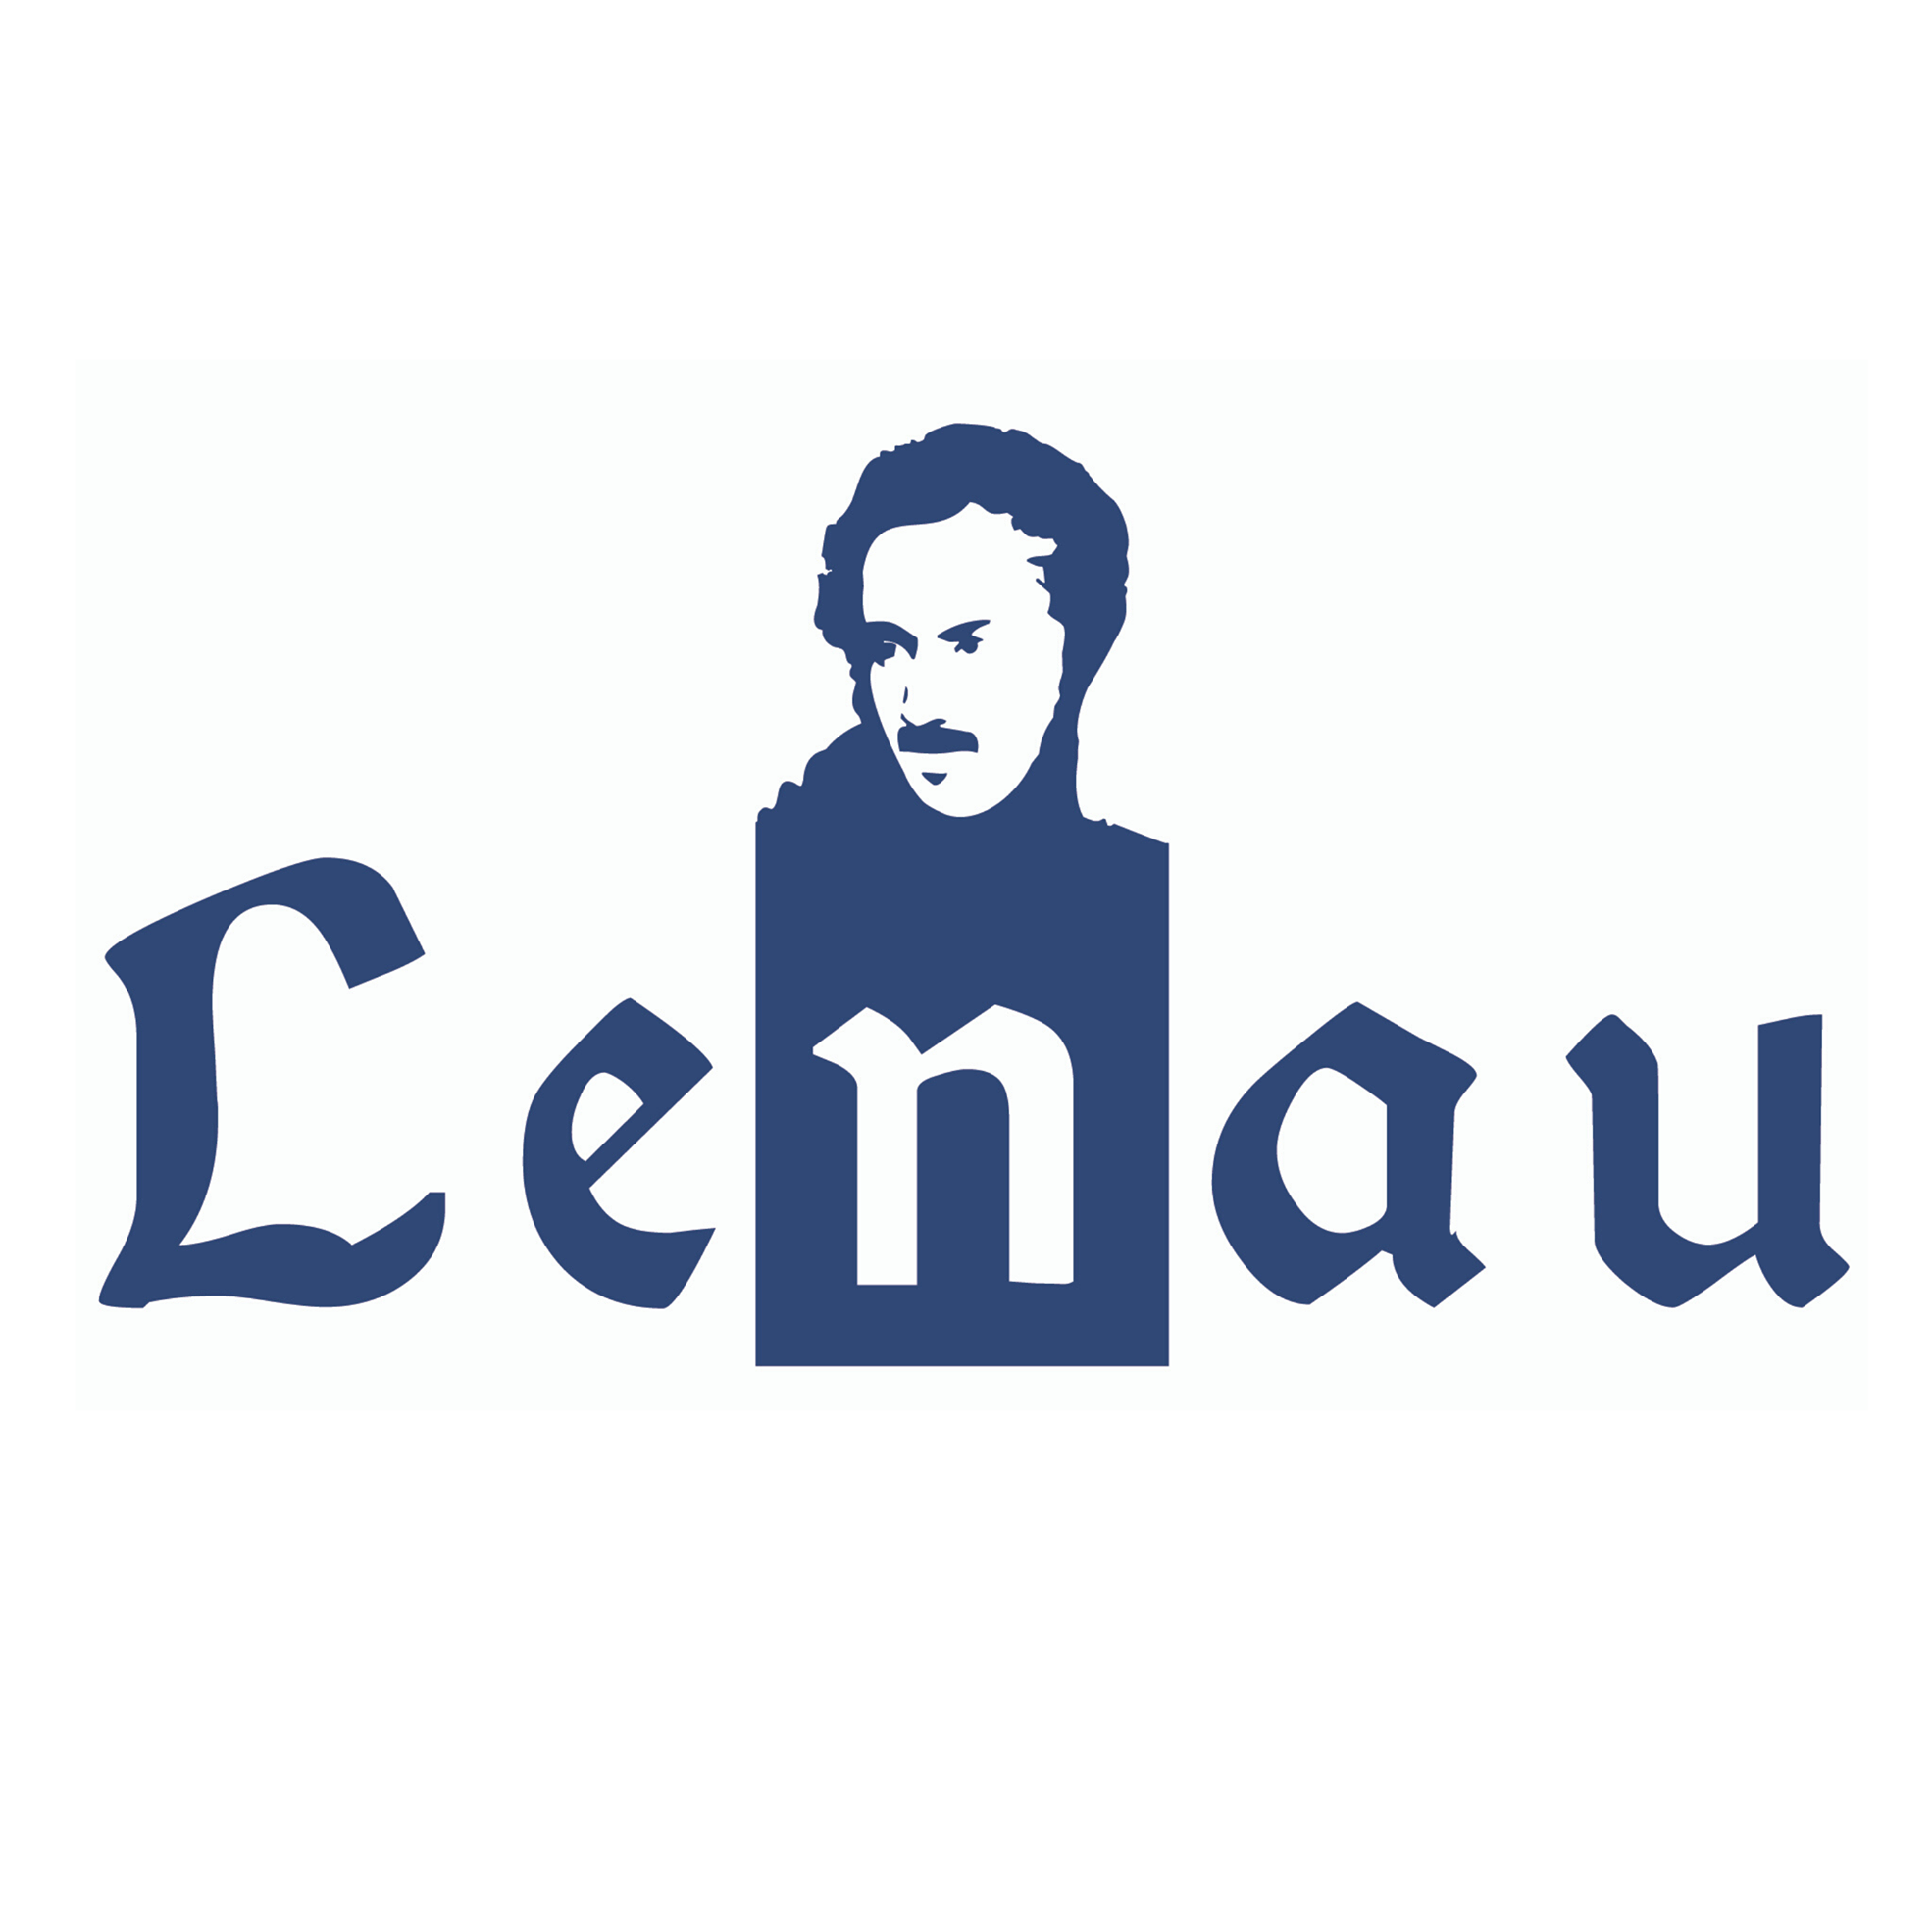 lenau_egyesulet_logo